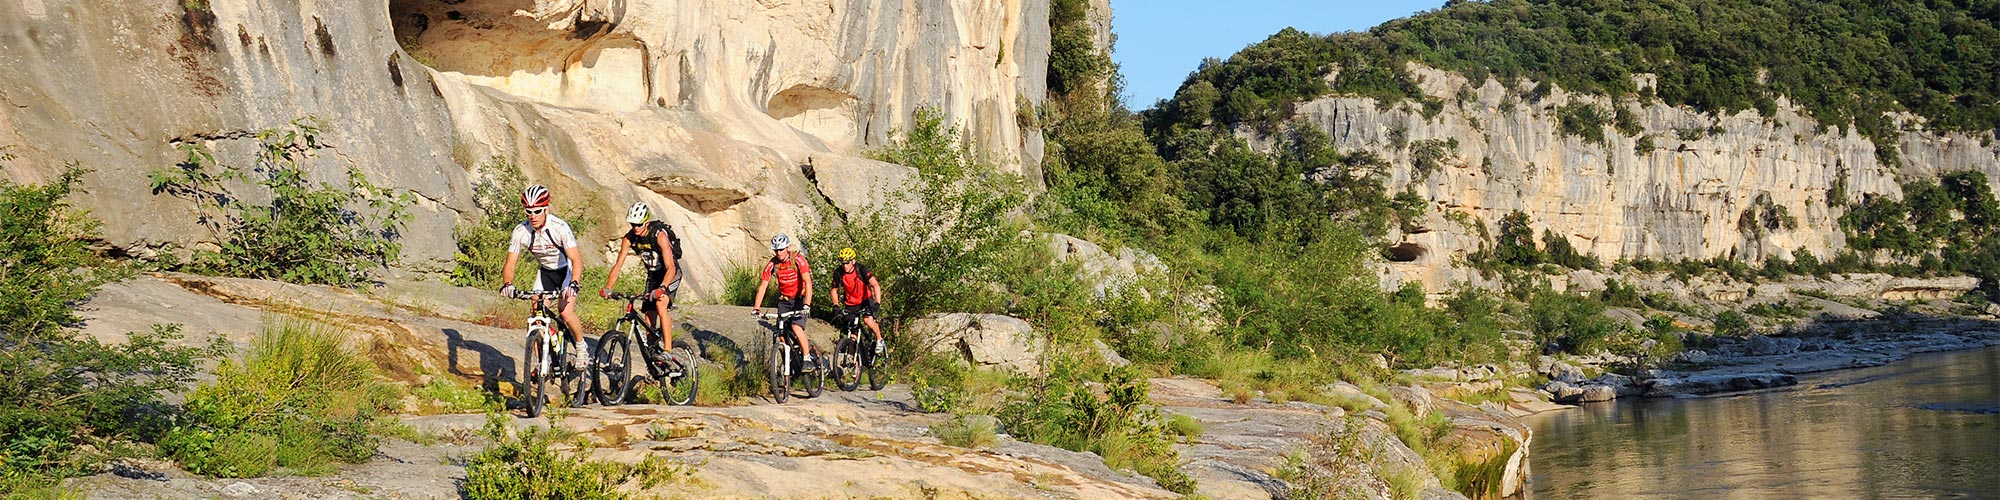 Bikeferien in der Ardèche, Südfrankreich